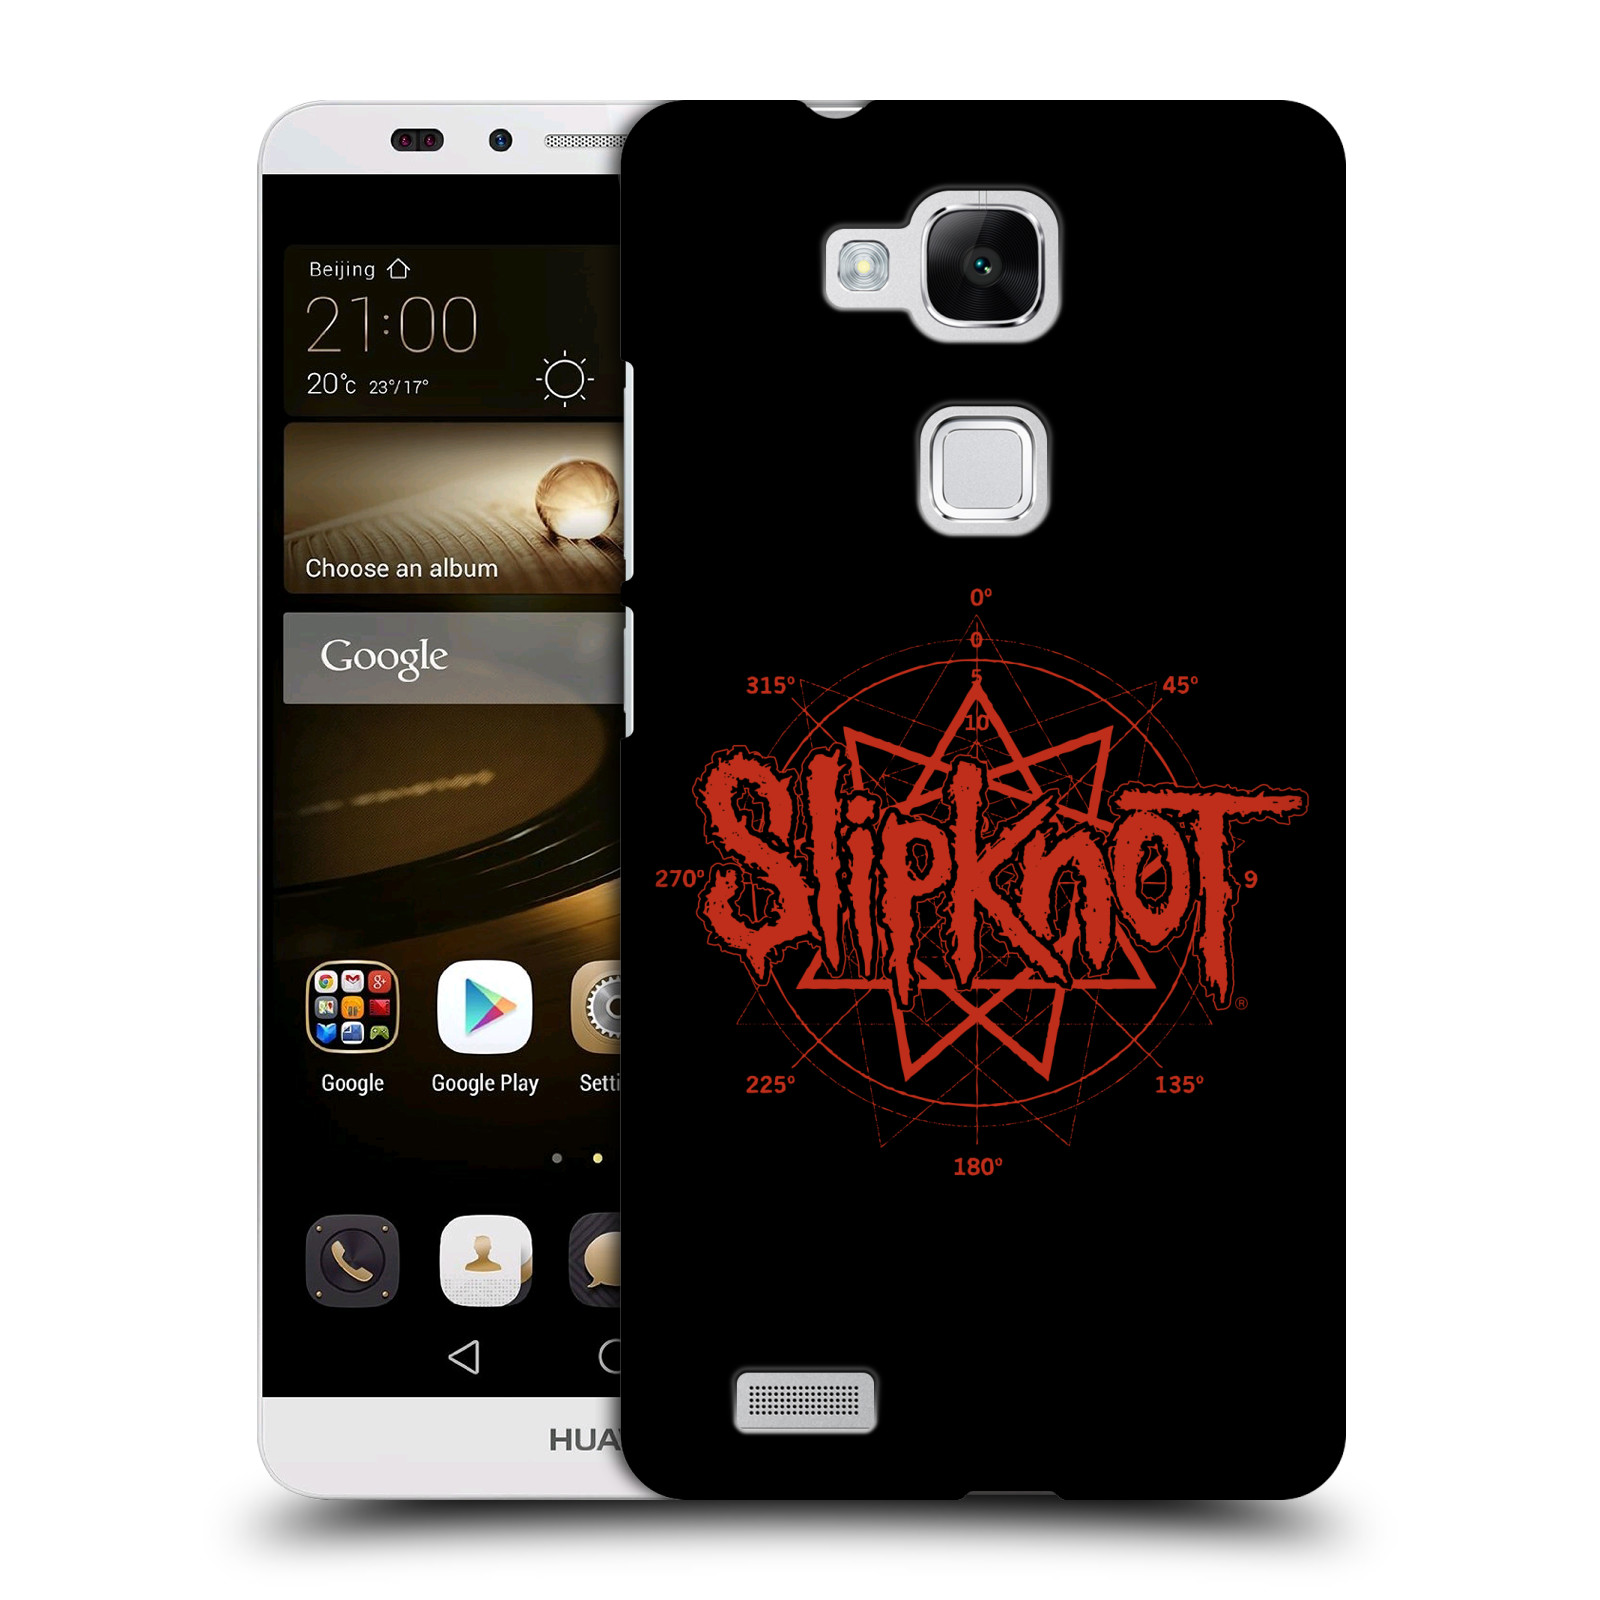 HEAD CASE plastový obal na mobil Huawei Mate 7 hudební skupina Slipknot logo